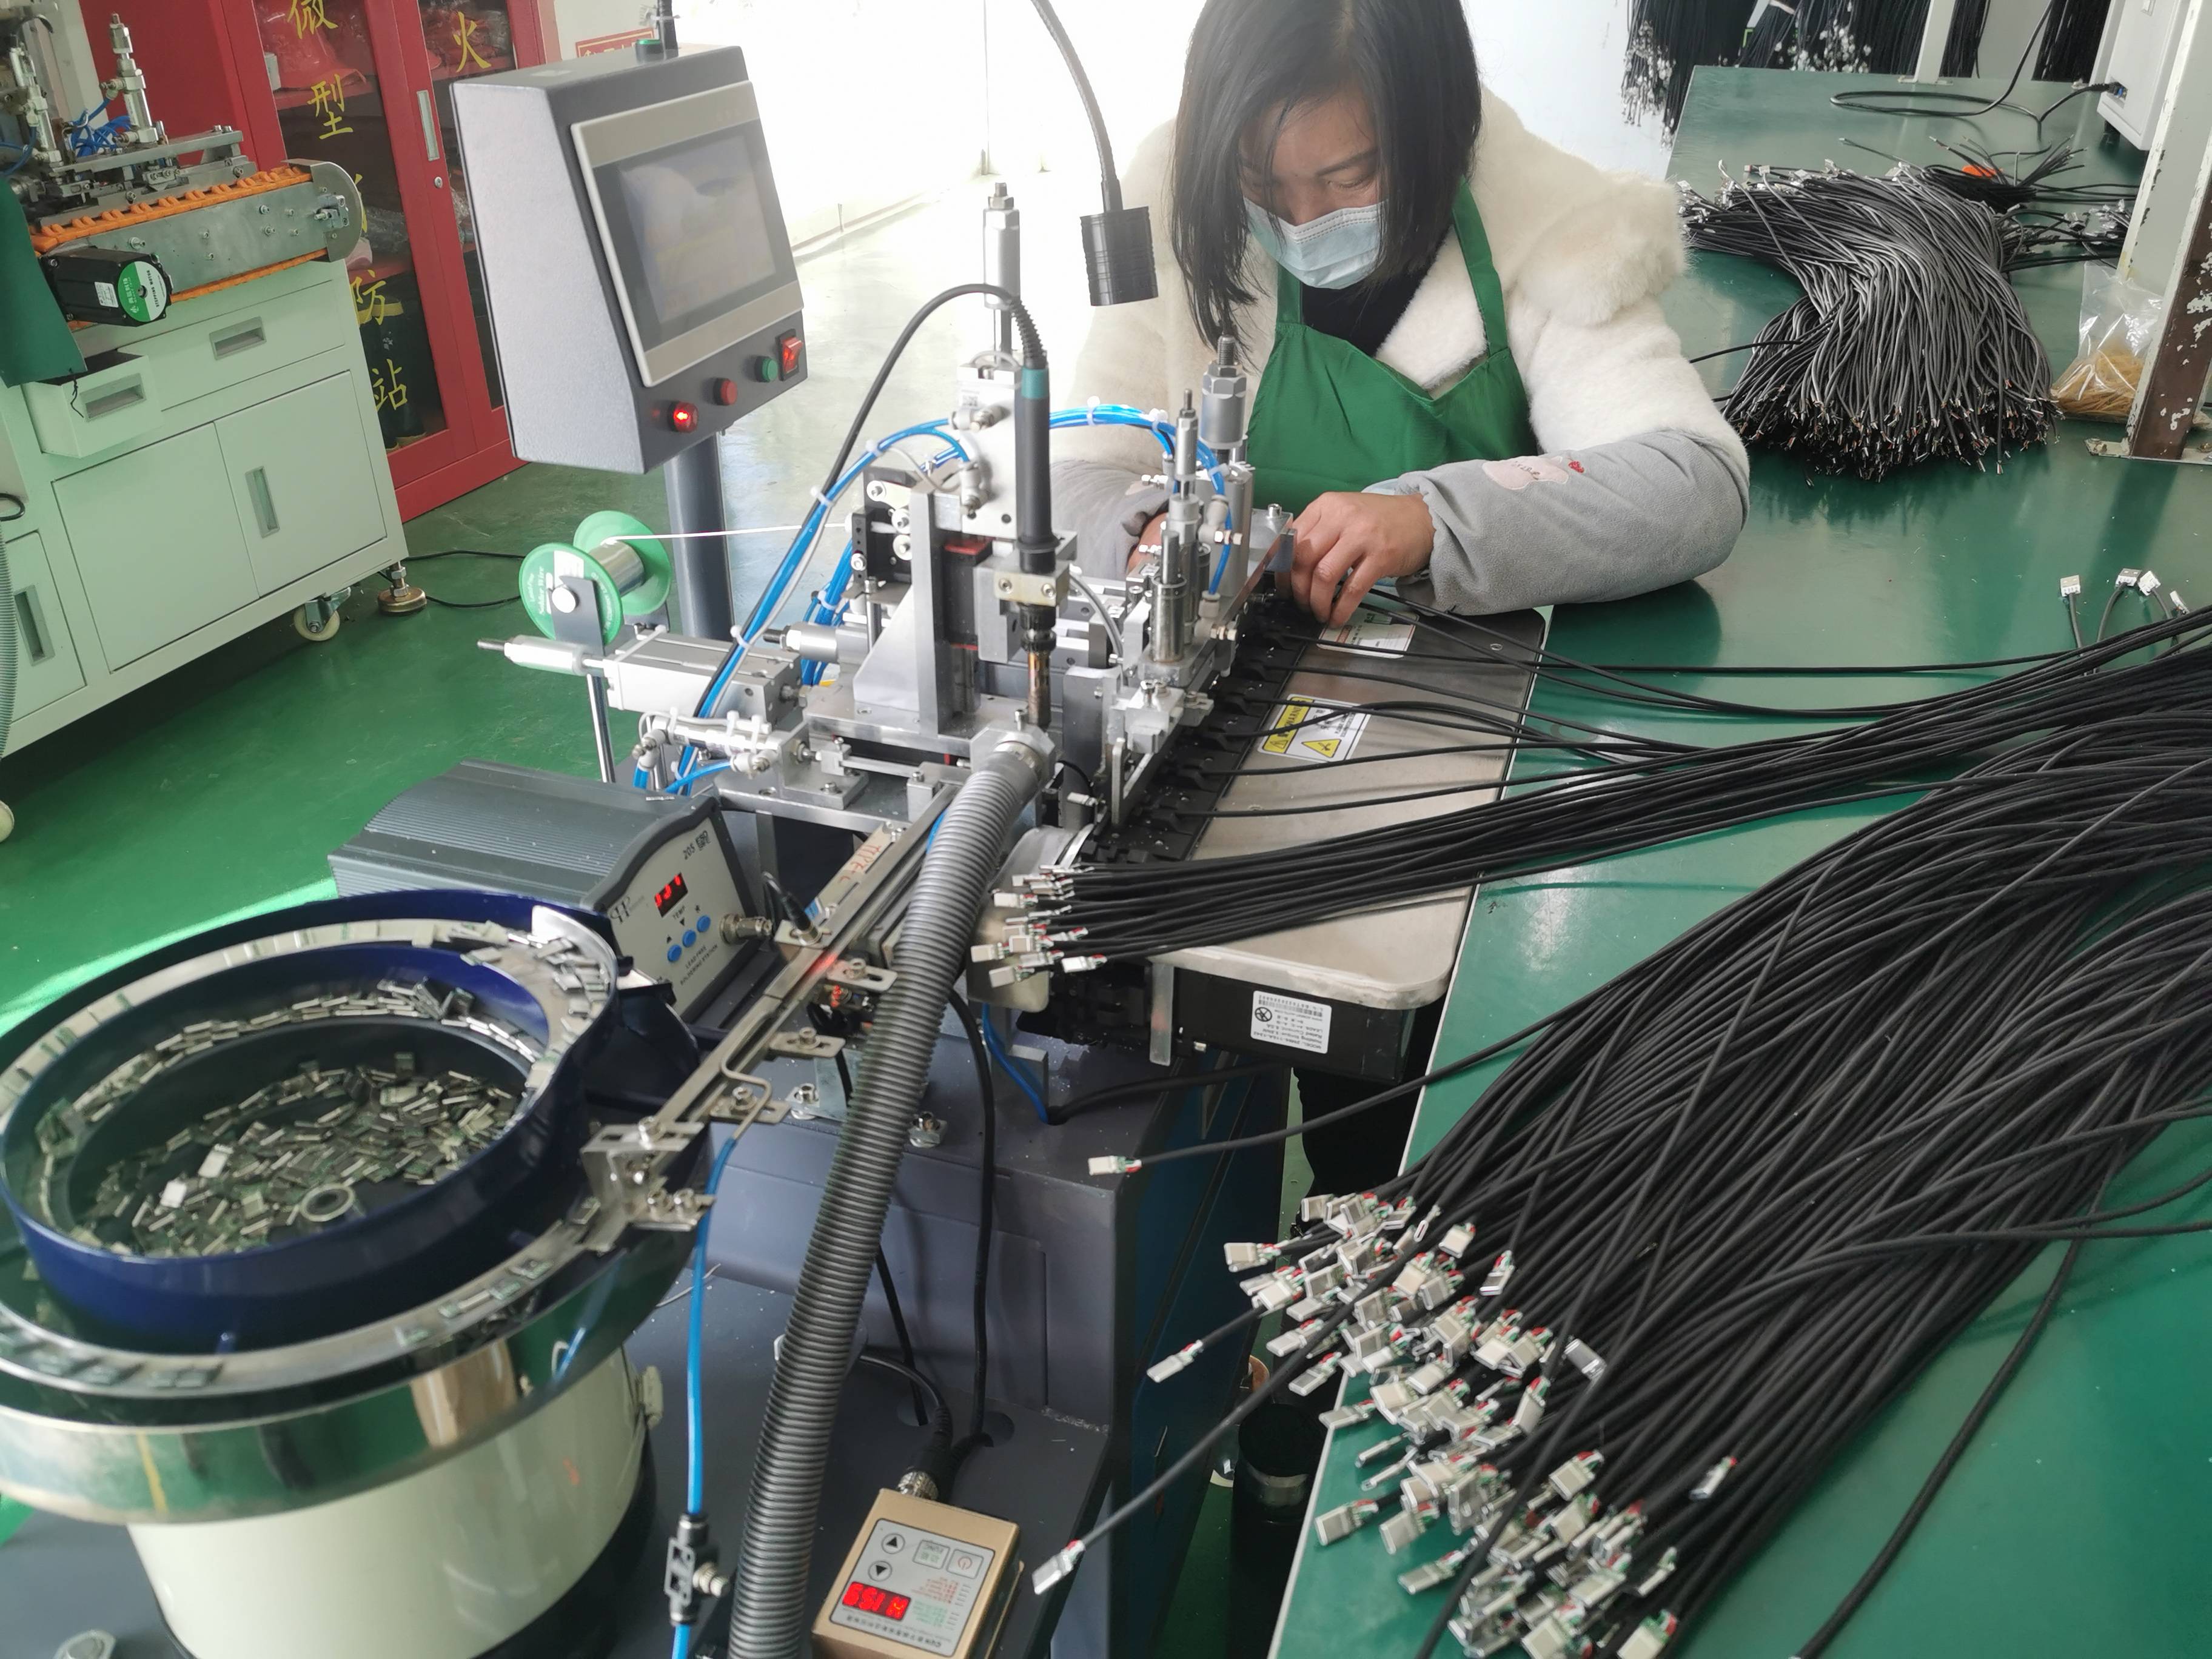 石泉县电子线束产业链和集群式发展迎来新春